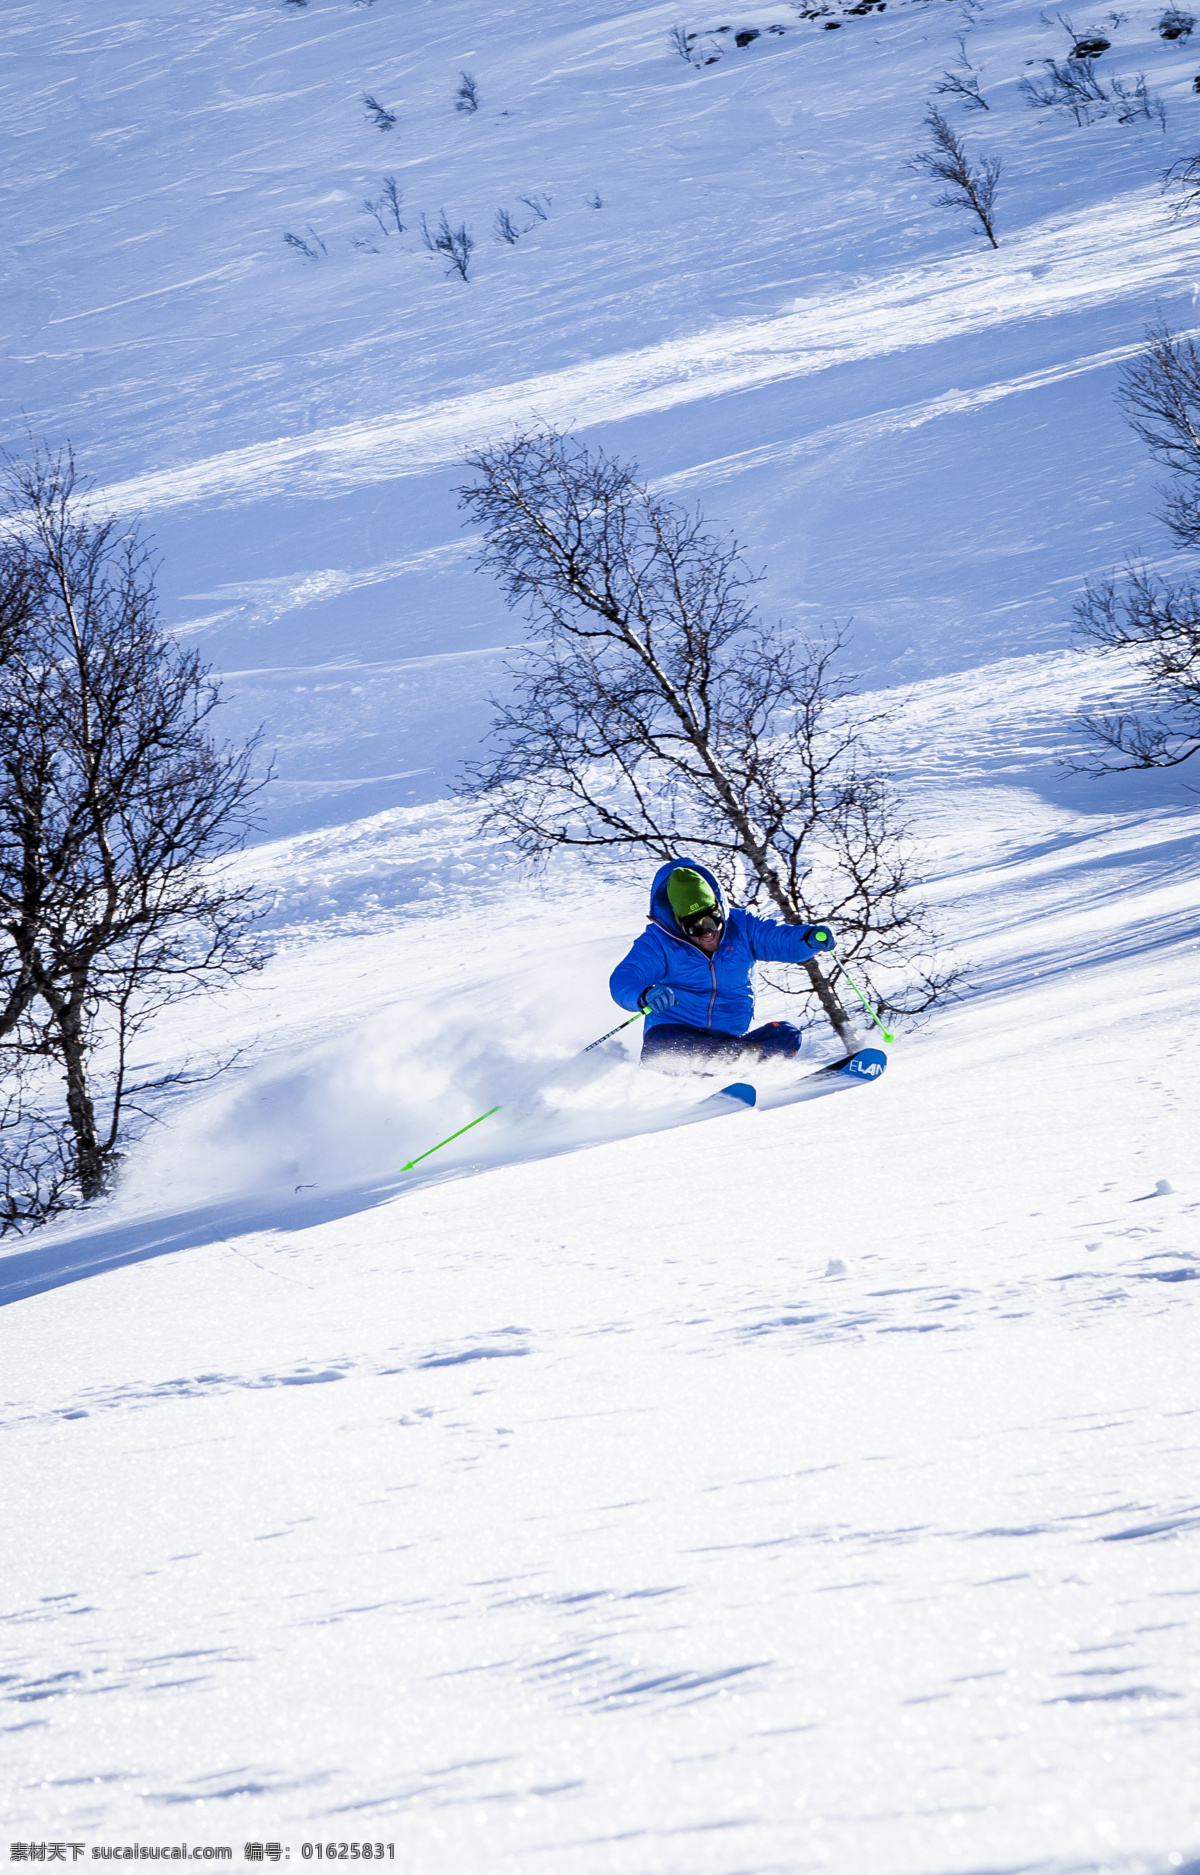 滑雪运动 滑雪 冬季滑雪 速滑 雪场 滑雪场 体育活动 文化艺术 体育运动